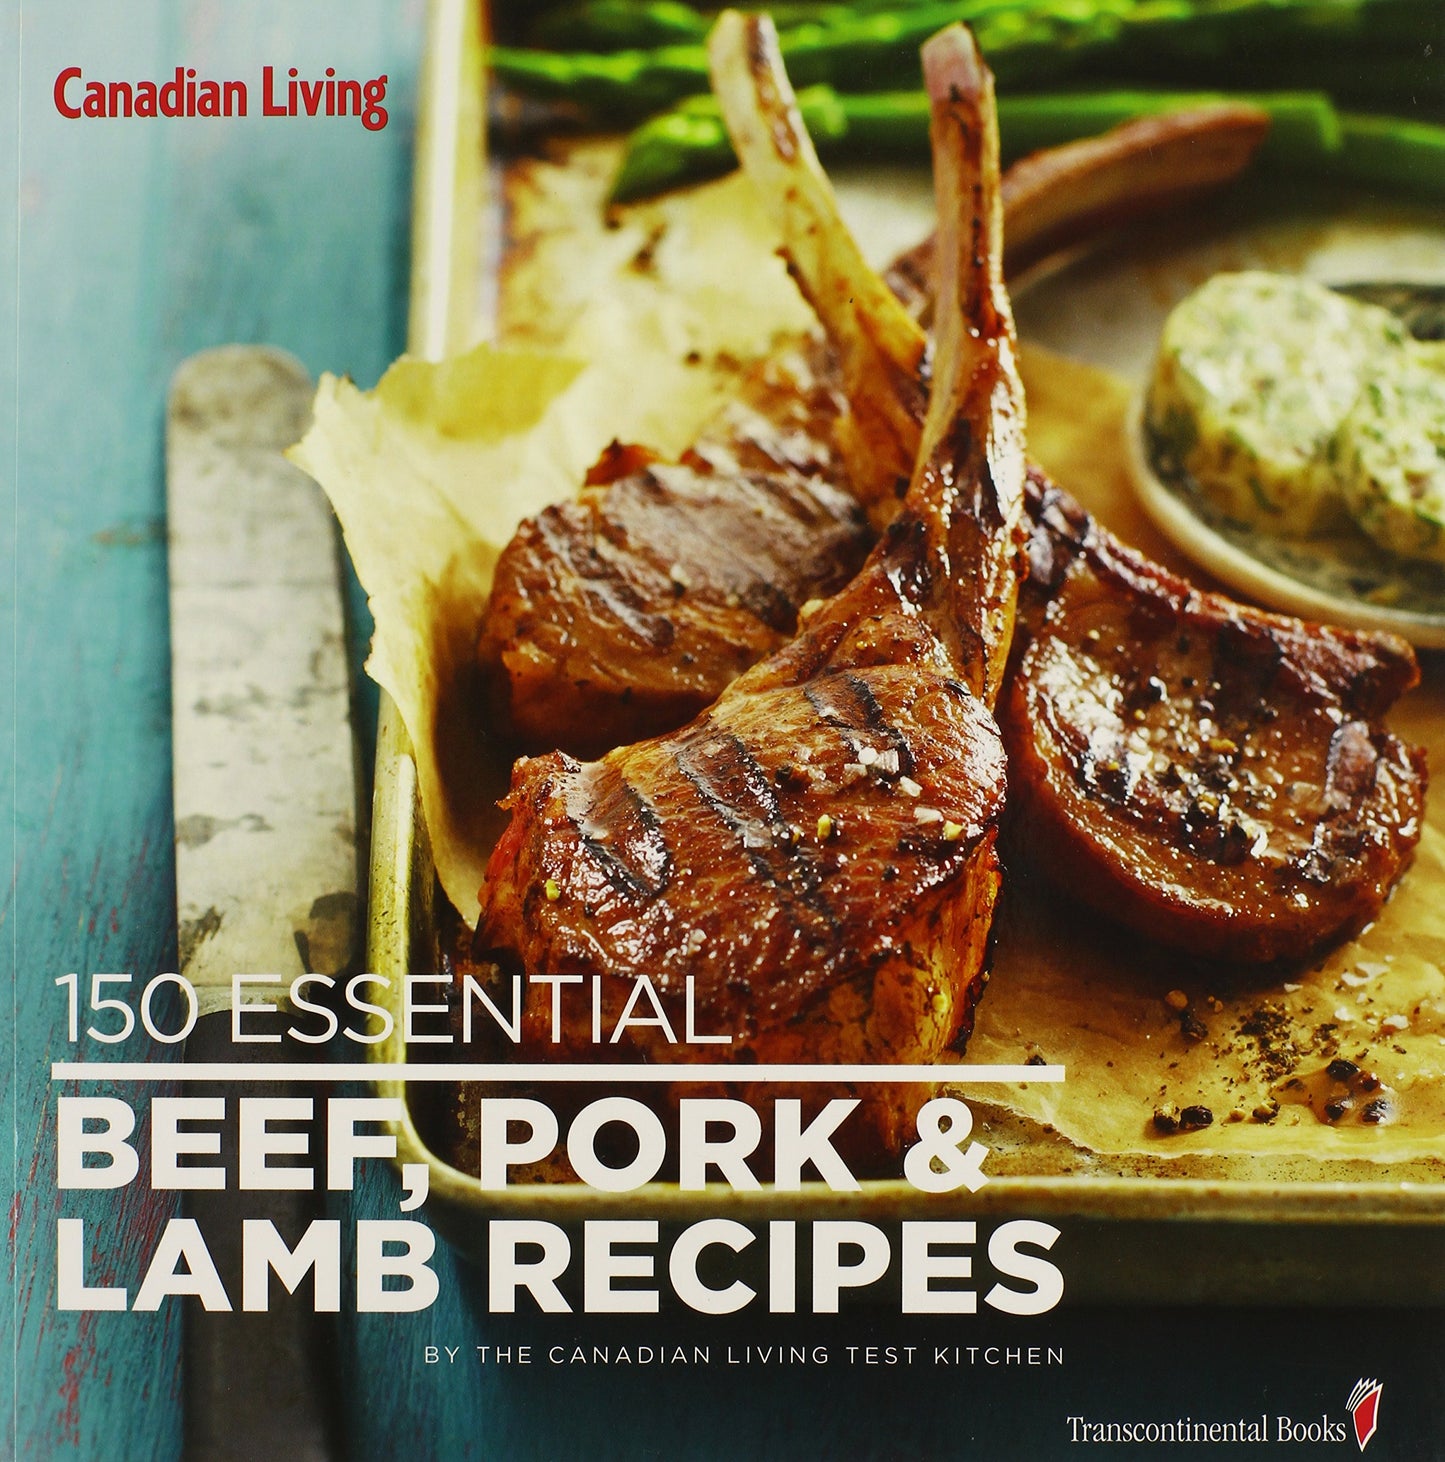 150 Essentials Beef, Pork, Lamb, Recipes